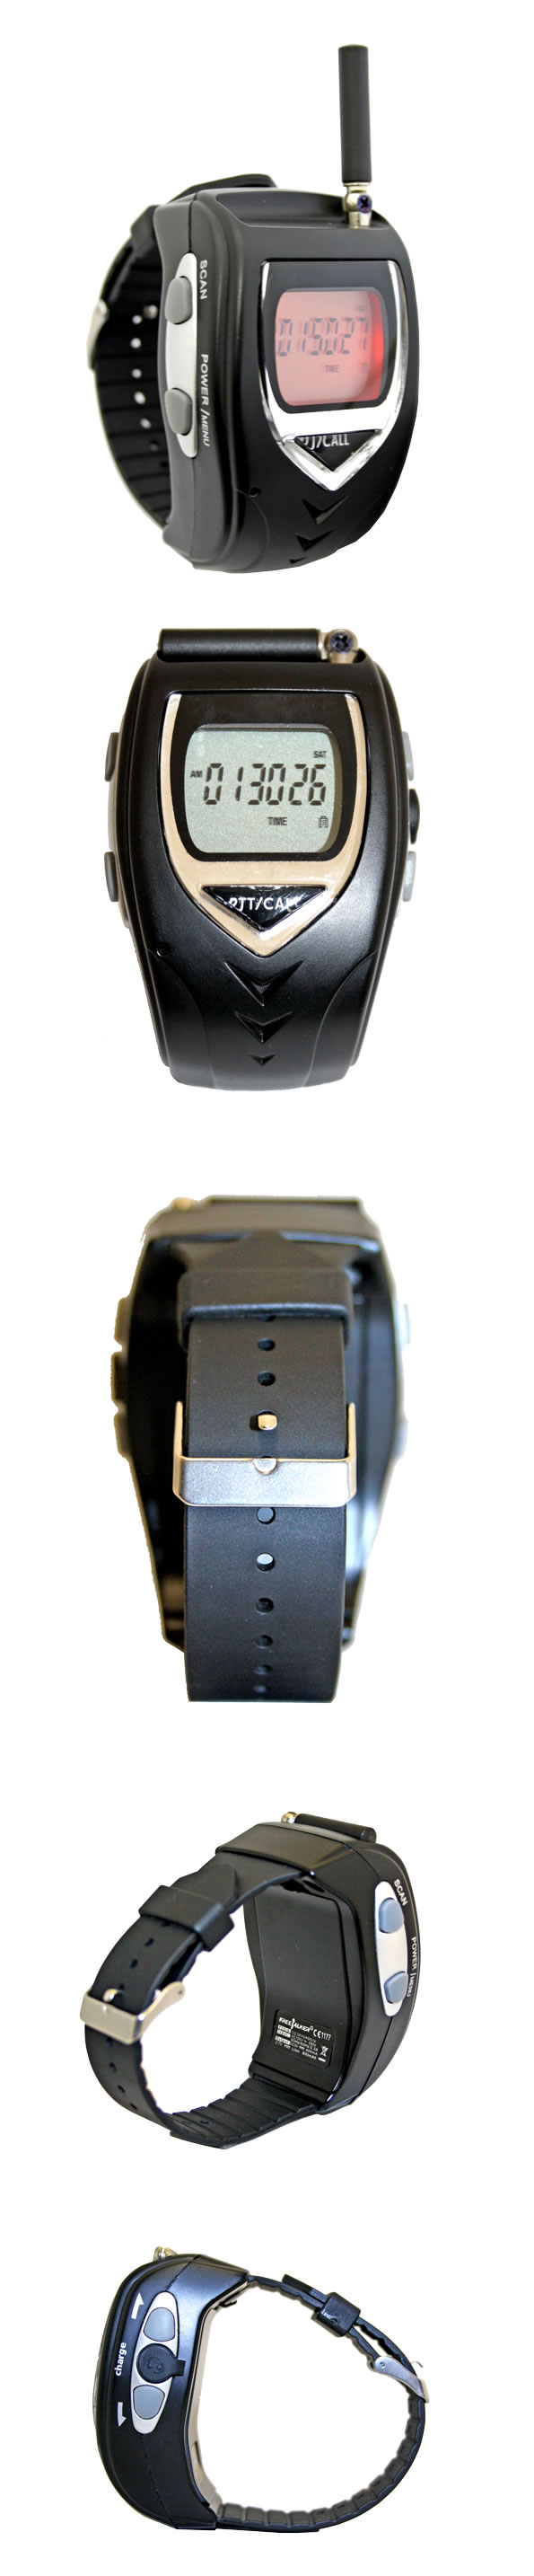 腕時計型特定小電力トランシーバー2台セット イヤホンマイク付